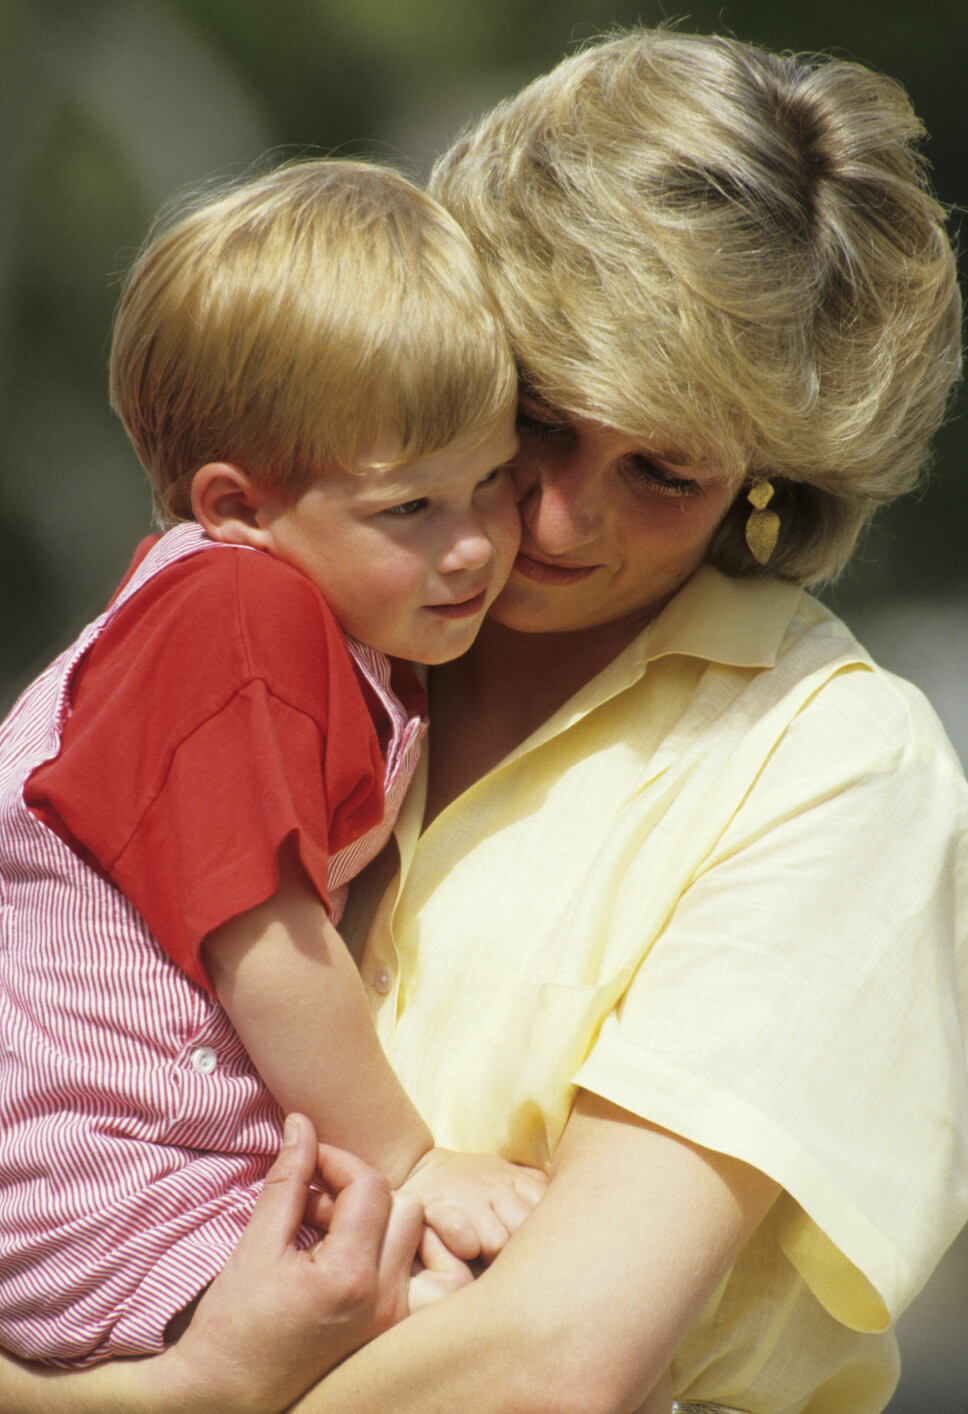 NÆRT FORHOLD: Prinsesse Diana uttalte før hun døde at hun følte at hun alltid måtte gi litt ekstra kjærlighet til yngstesønnen, prins Harry. Det førte til et ekstremt nært bånd mellom mor og sønn.